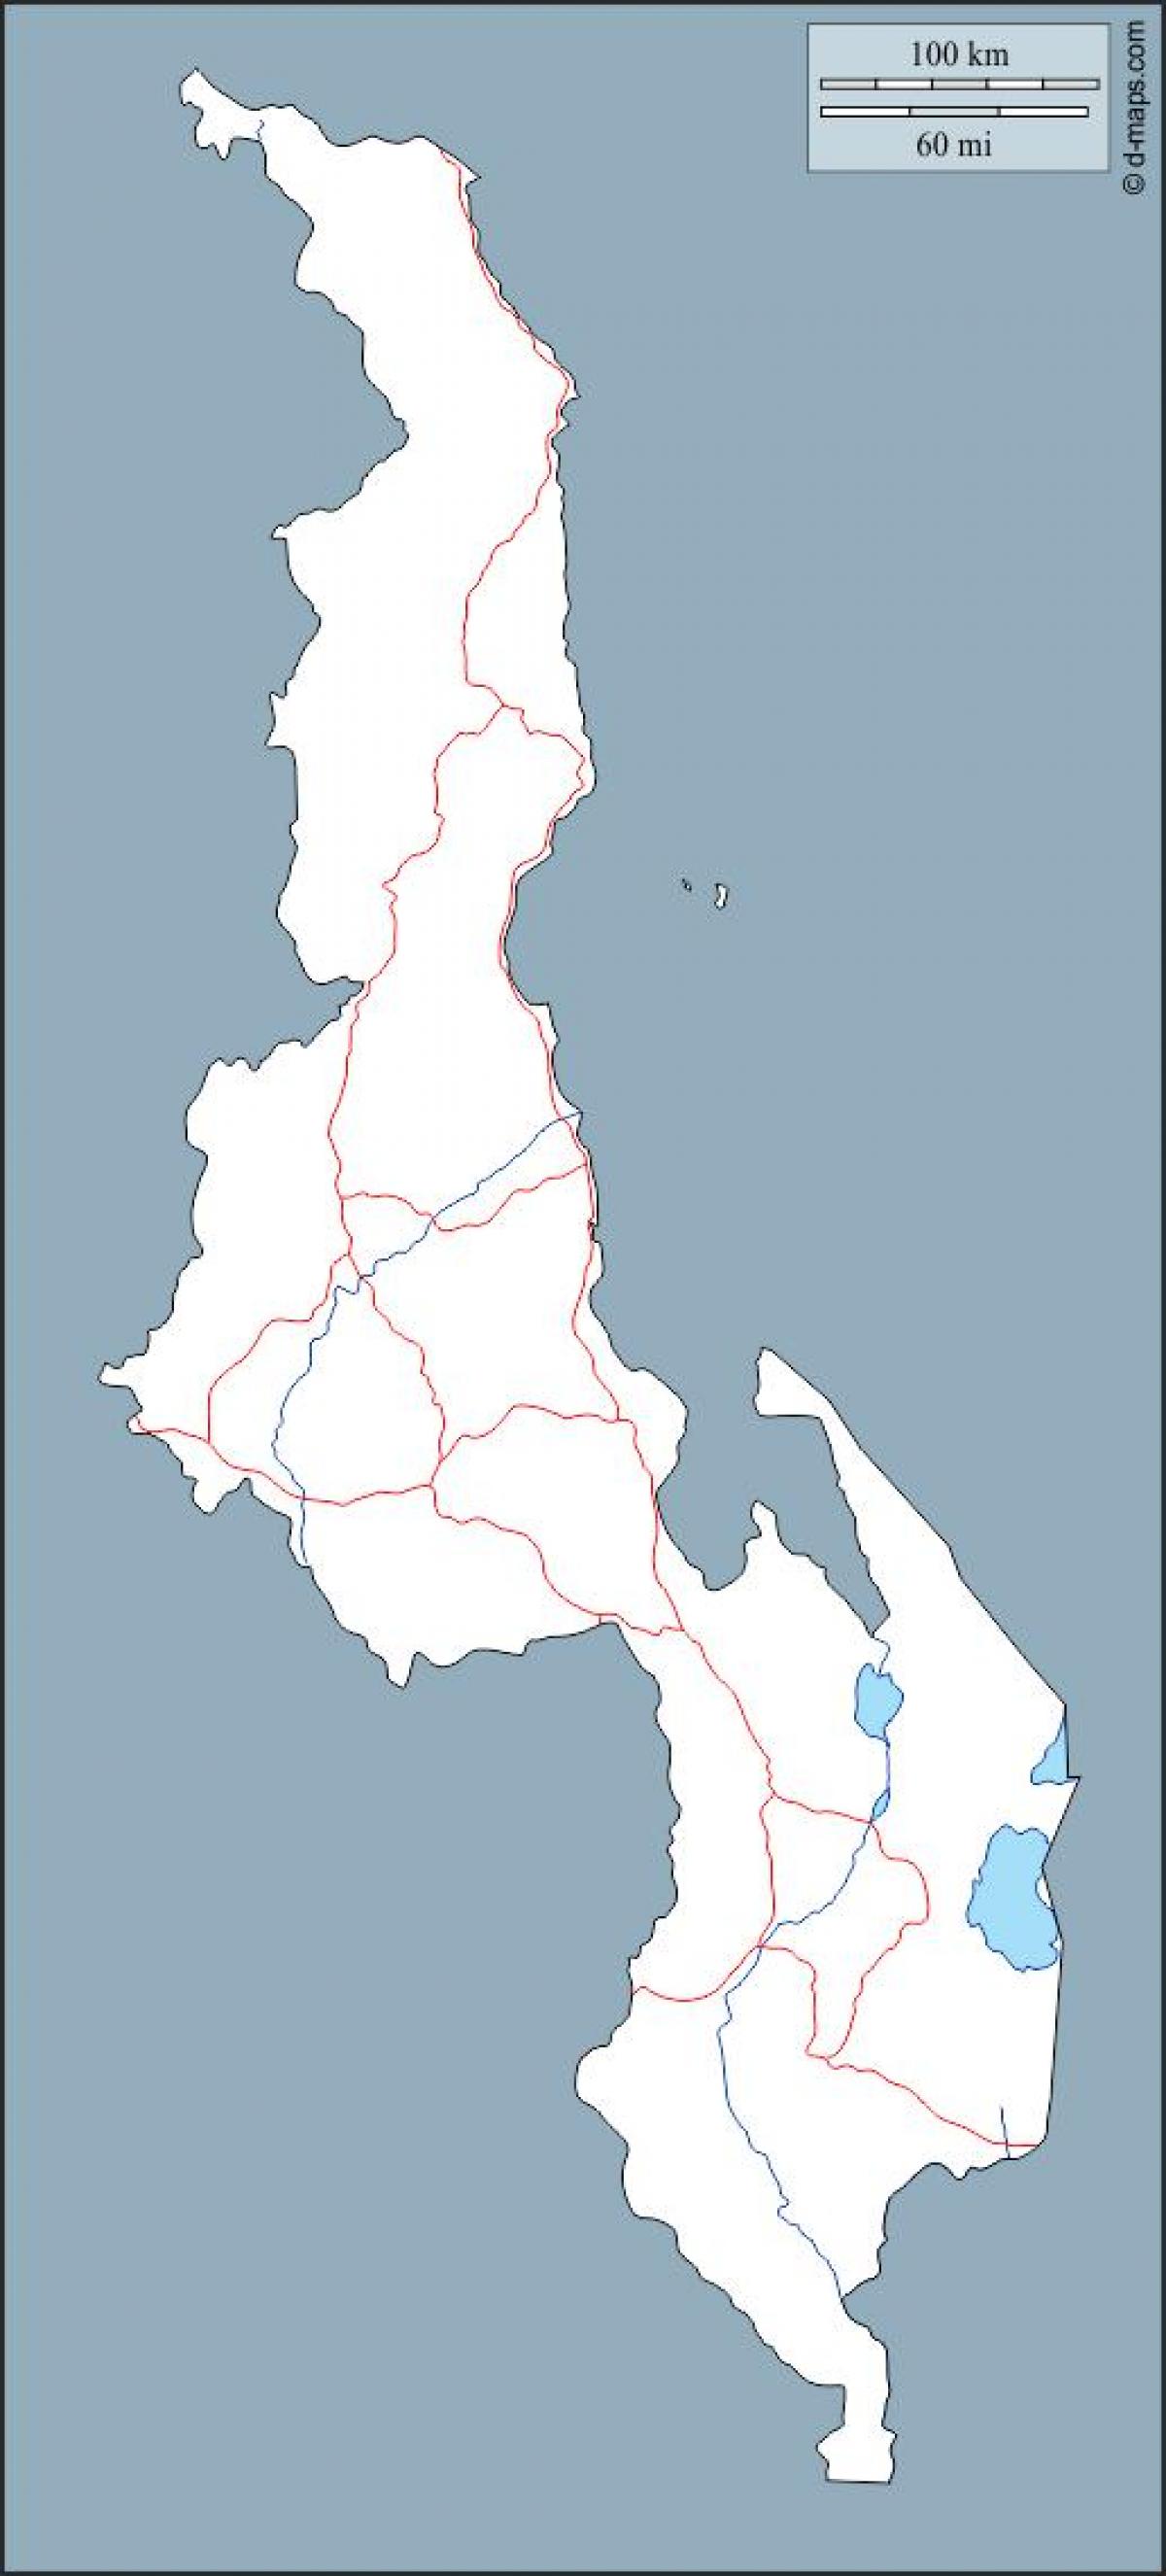 नक्शा मलावी के नक्शे रूपरेखा